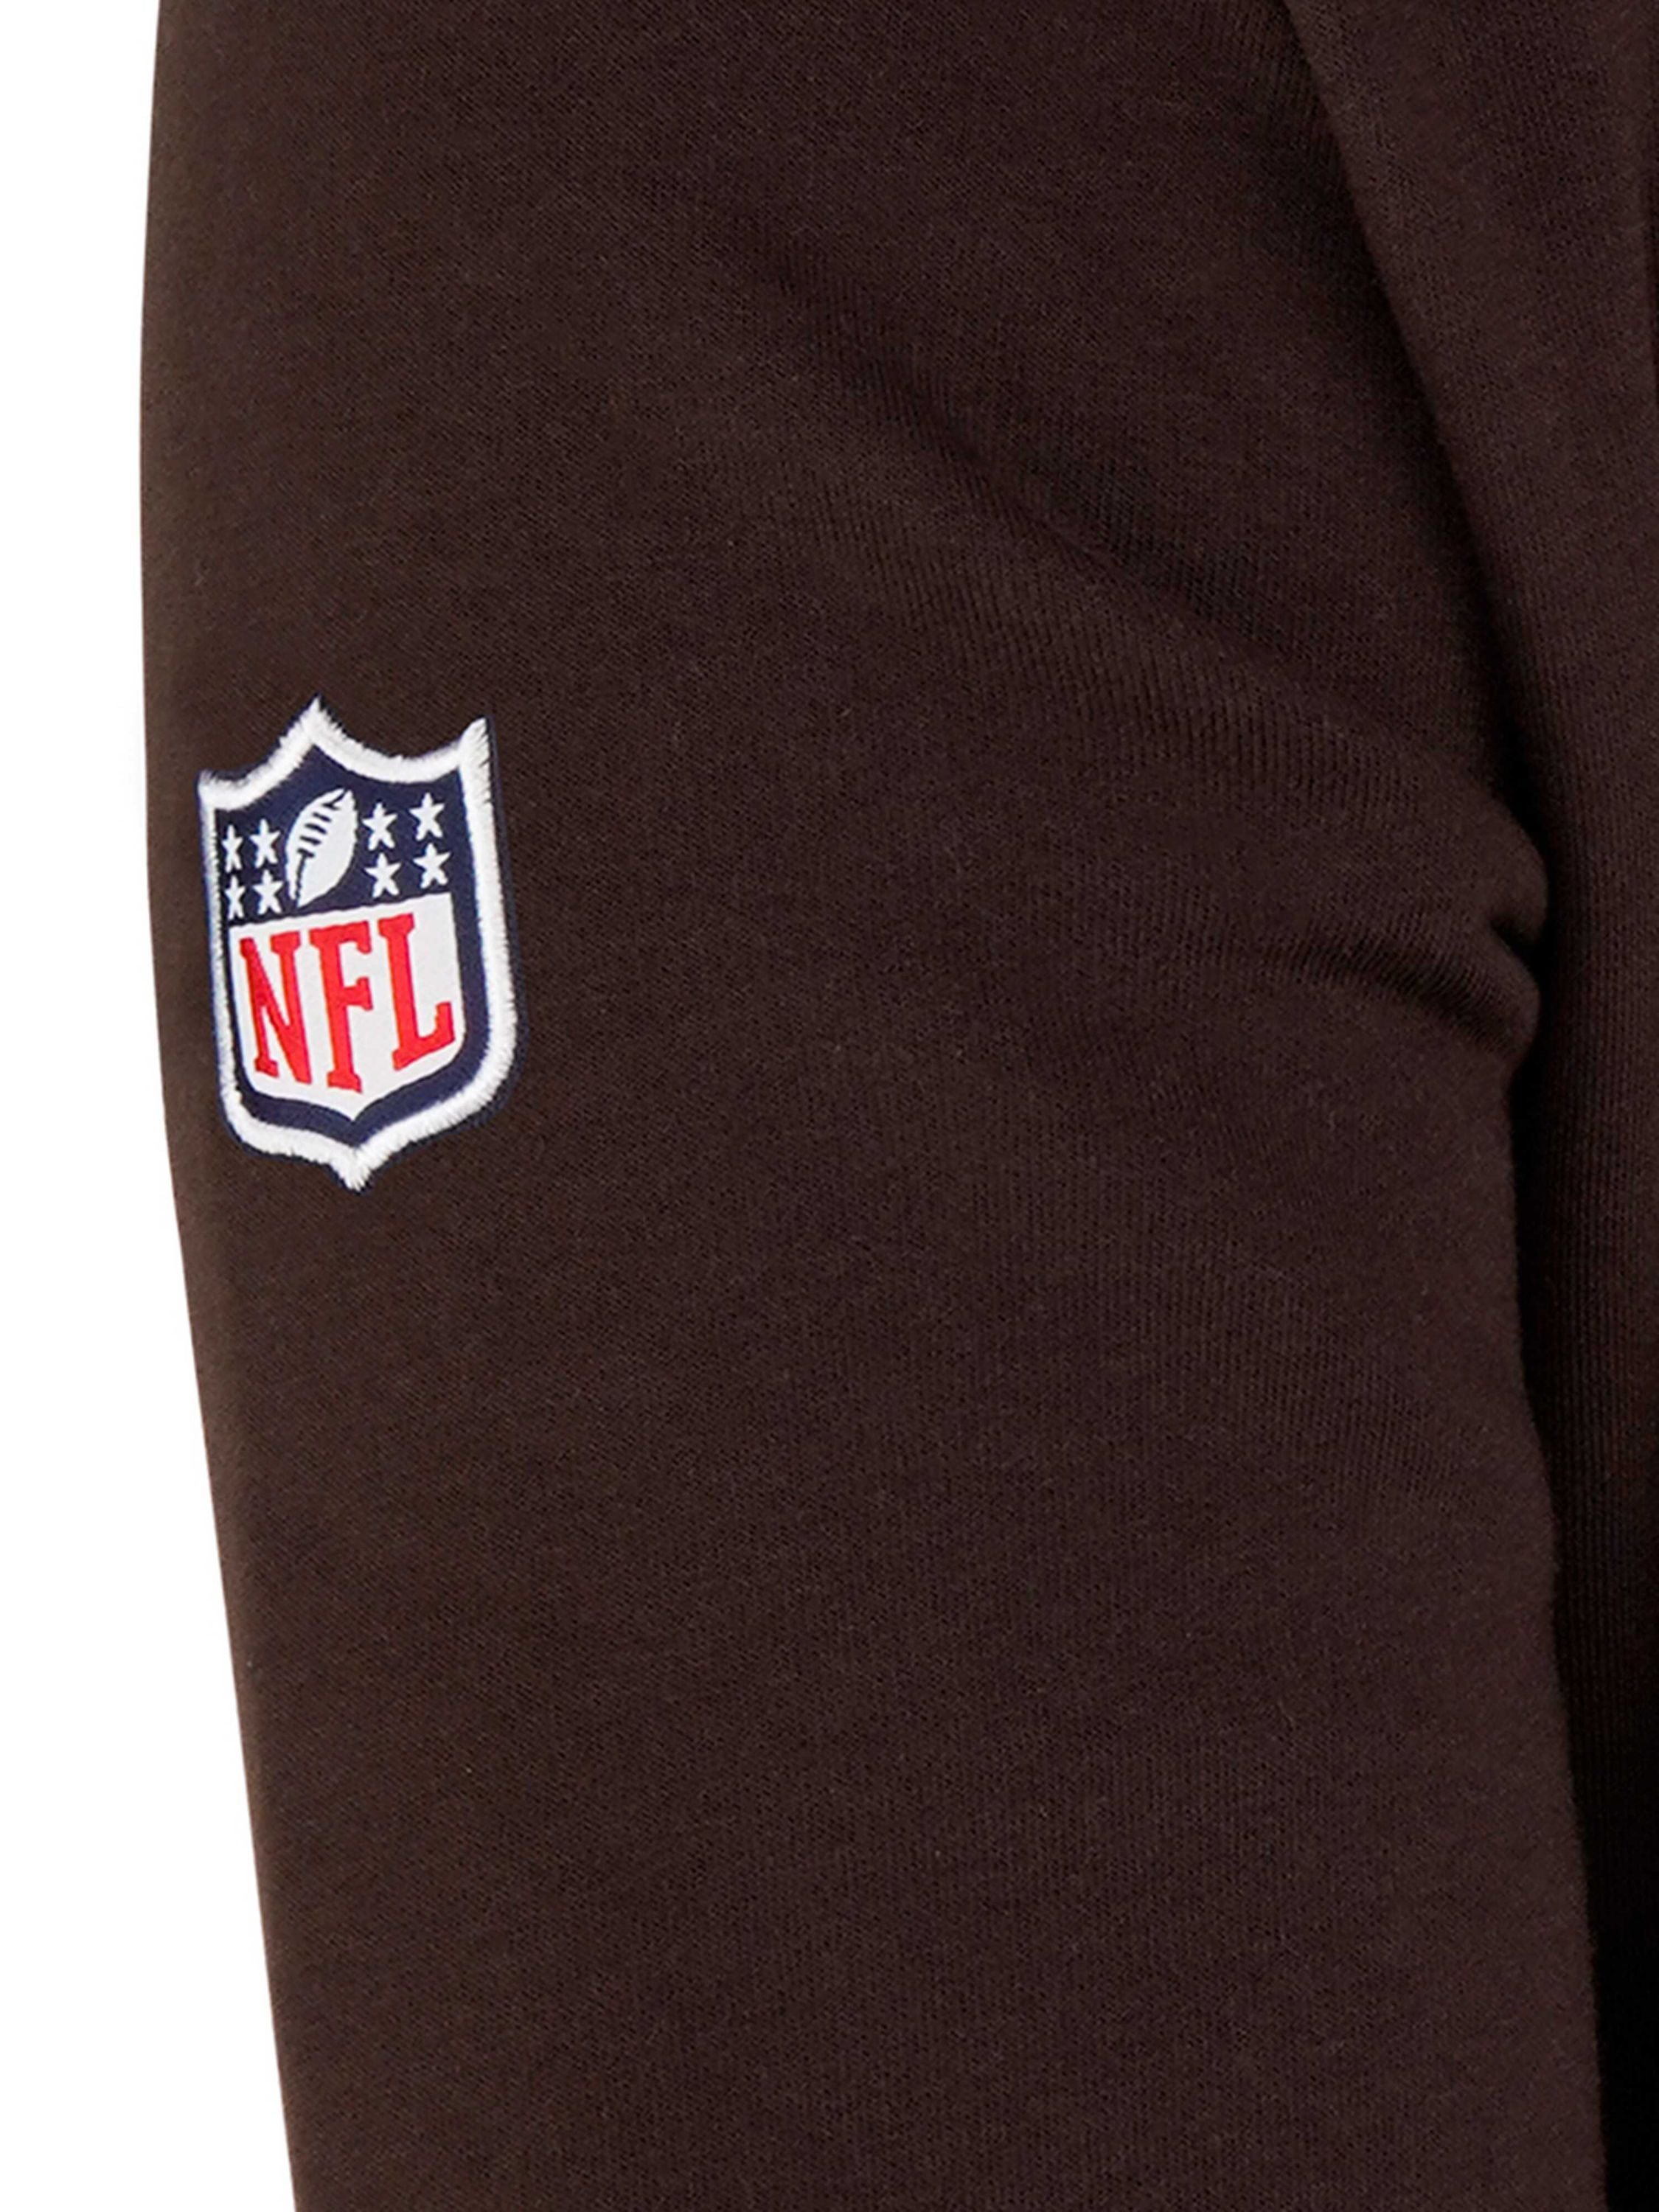 New Era - NFL Cleveland Browns Team Logo Hoodie